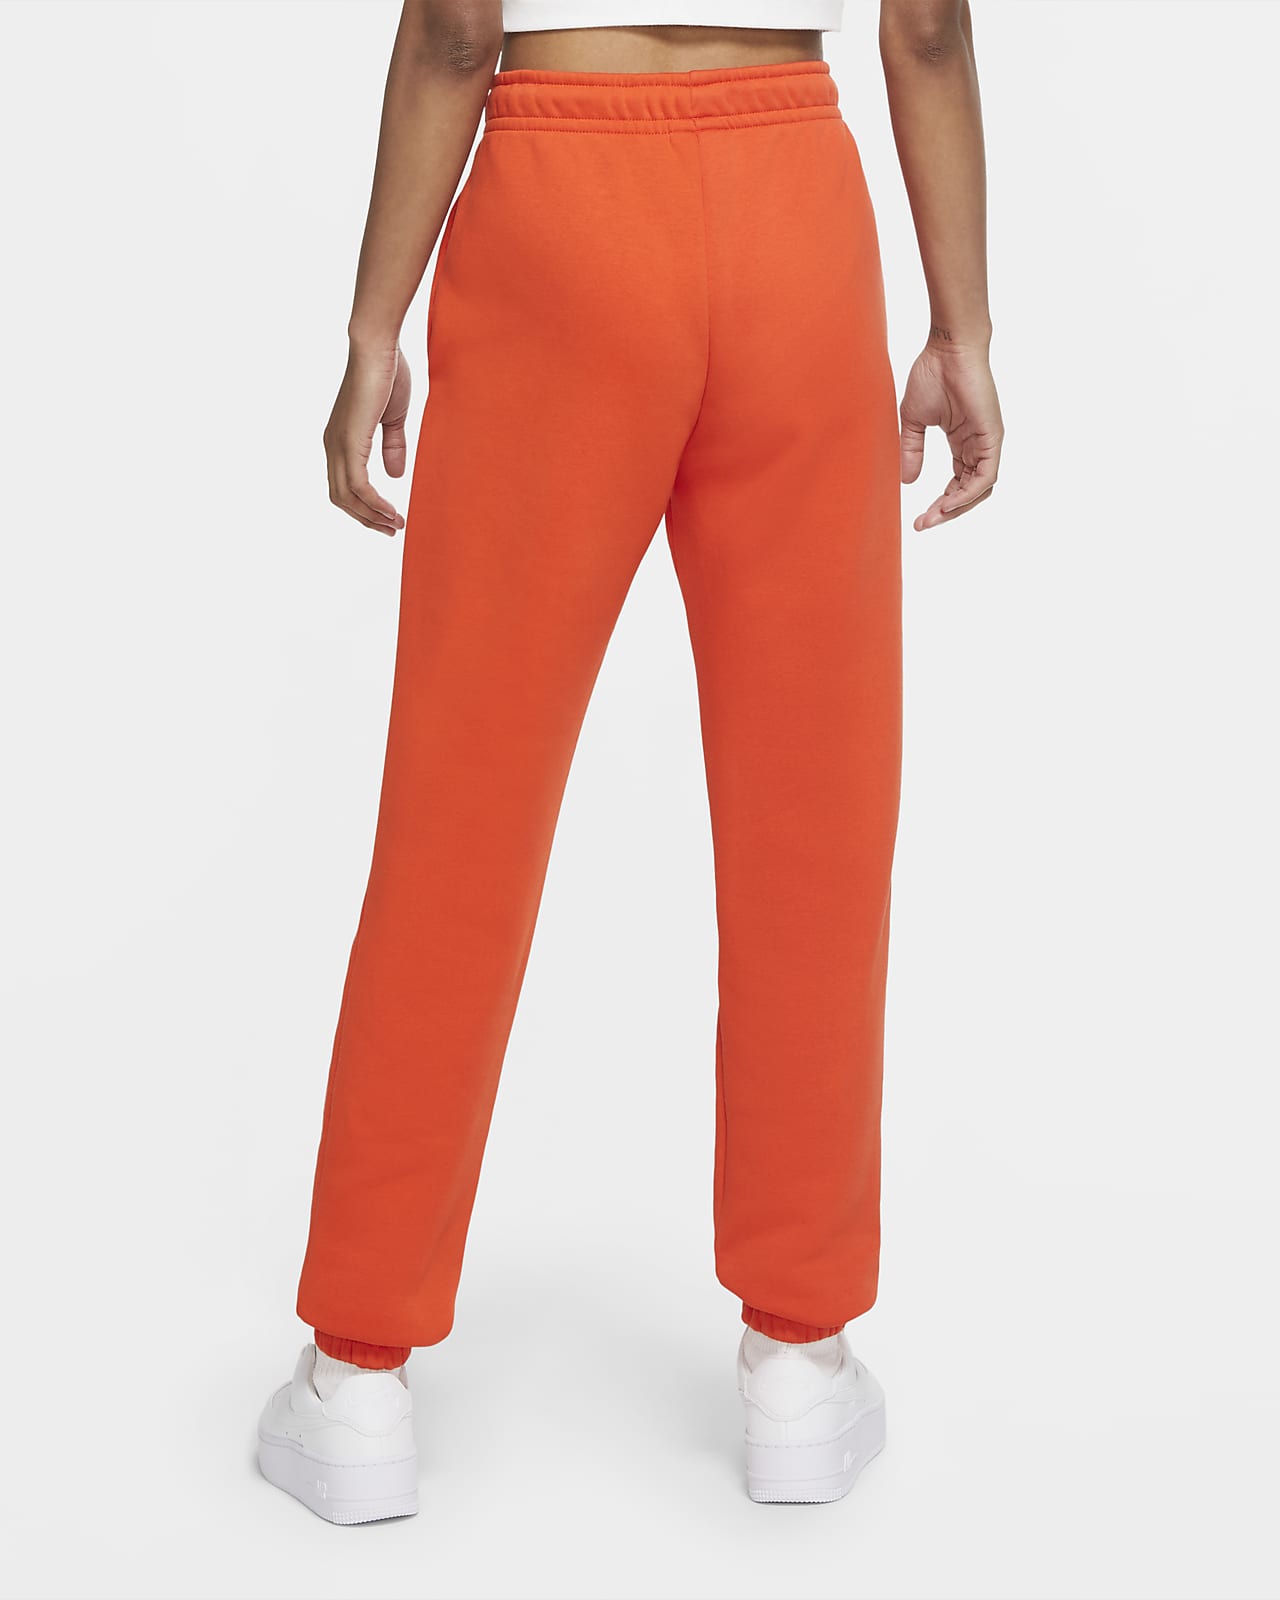 pantaloni nike arancioni